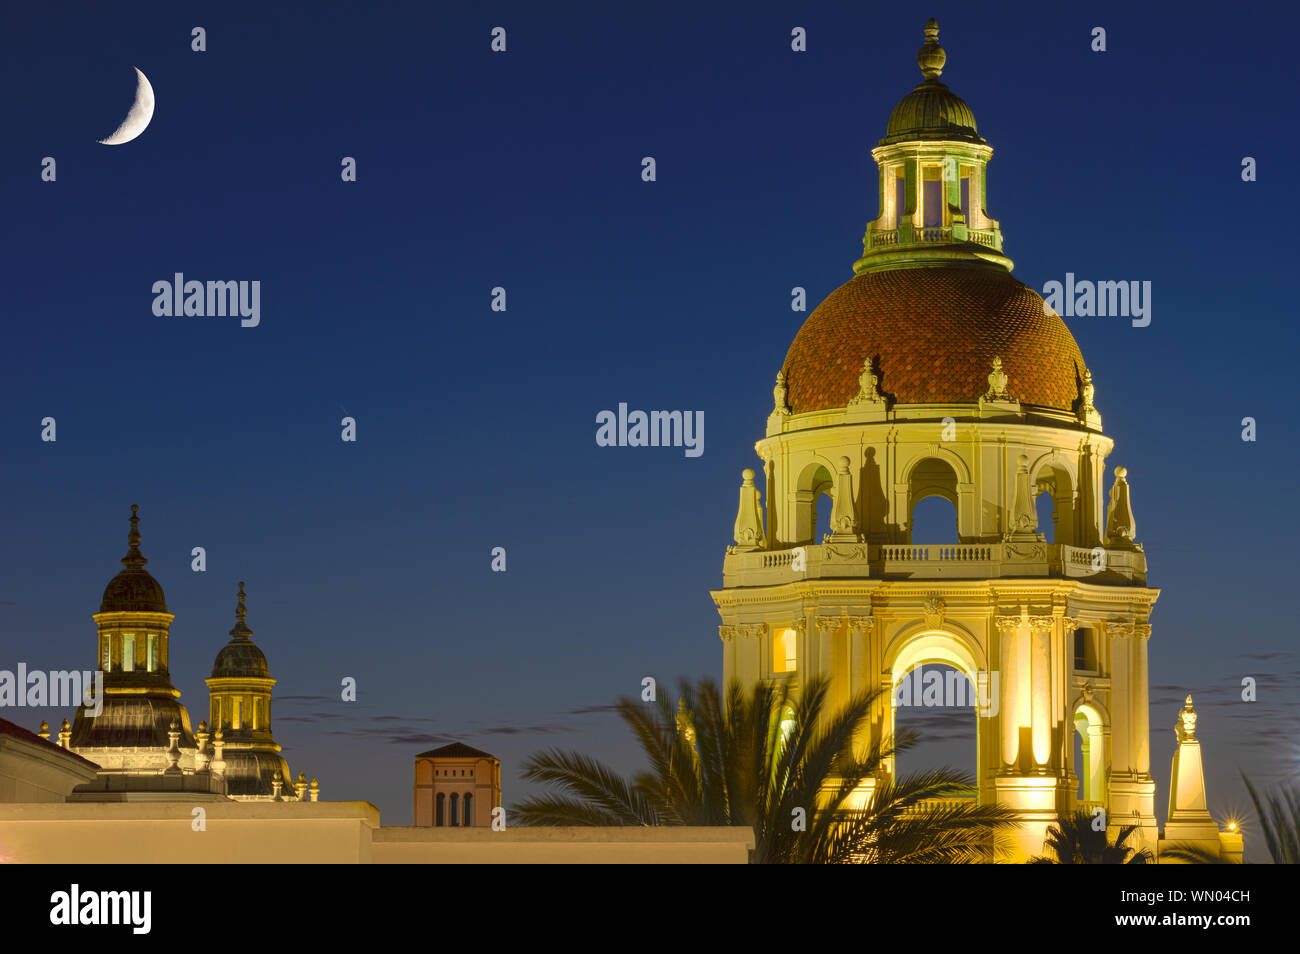 La tour principale de l'Hôtel de Ville de Pasadena et croissant de lune dans le ciel de l'ouest au cours de l'heure bleue. Banque D'Images